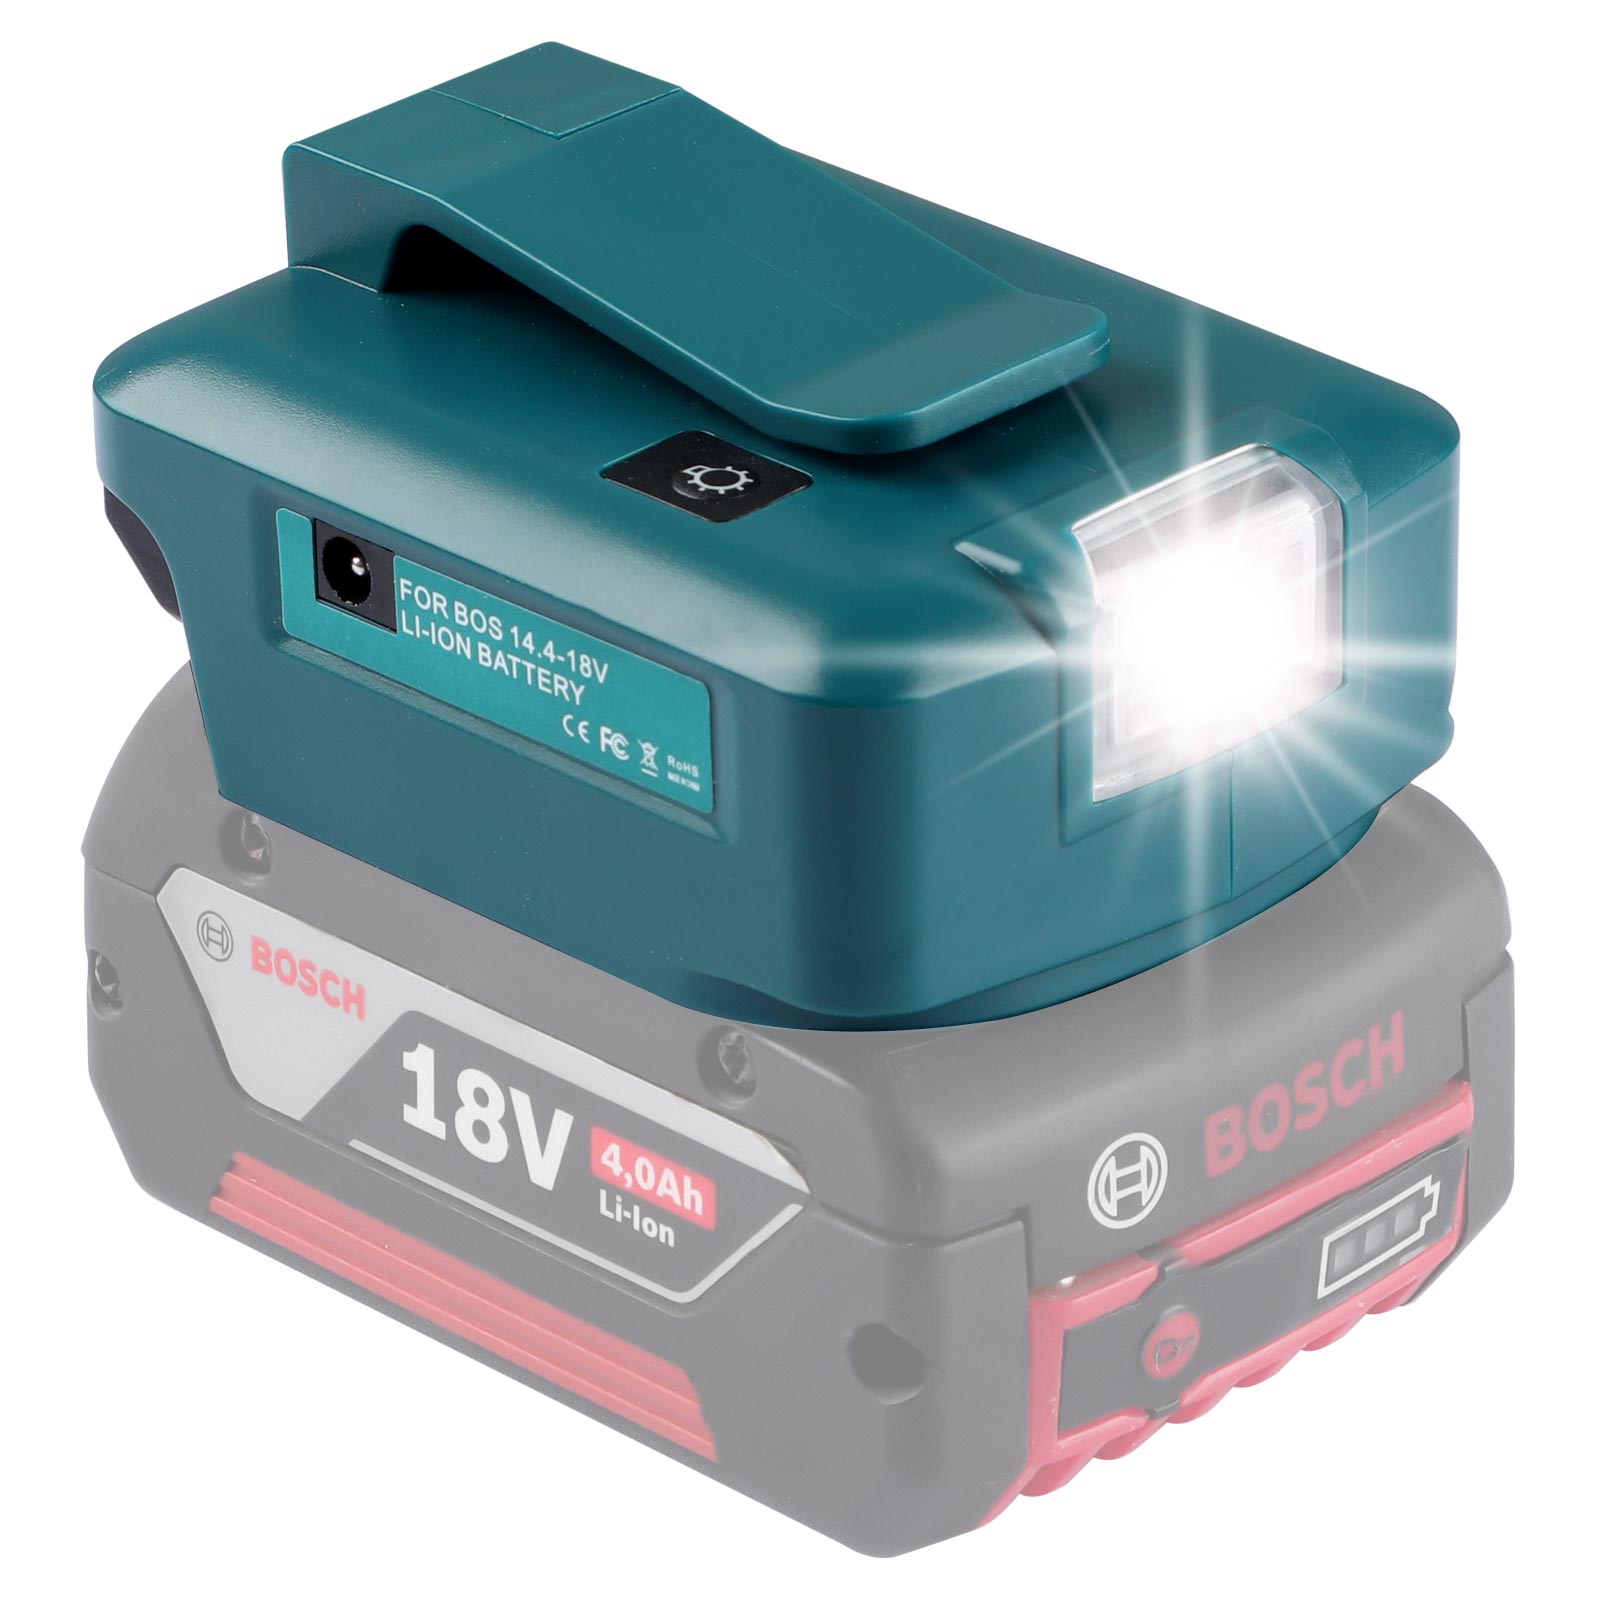 Adattatore per batteria Urun Luce a LED con porta CC e 2 porte USB per fonte di alimentazione a batteria al litio Bosch 14,4-18 V